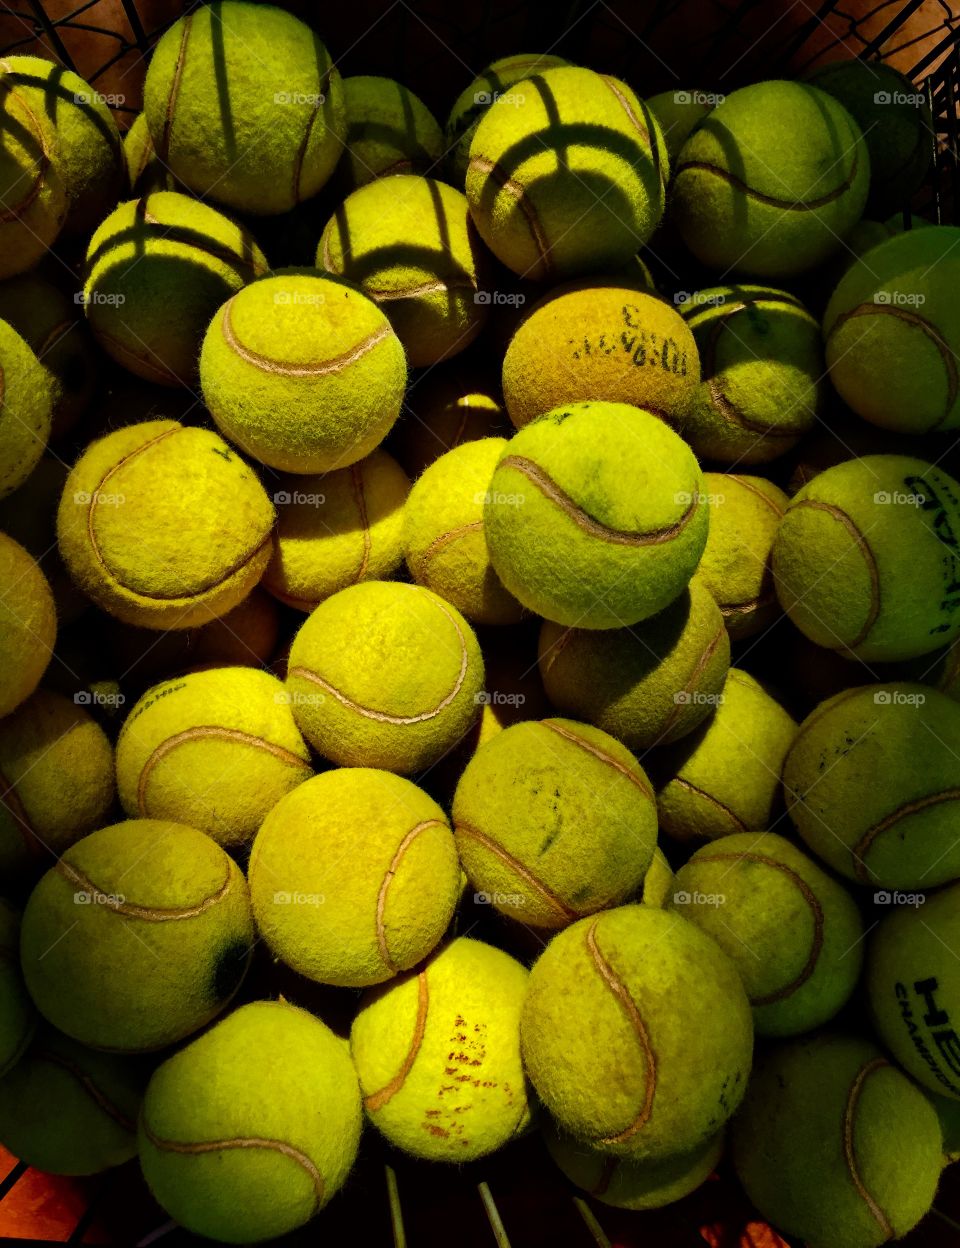 Abundance of tennis ball